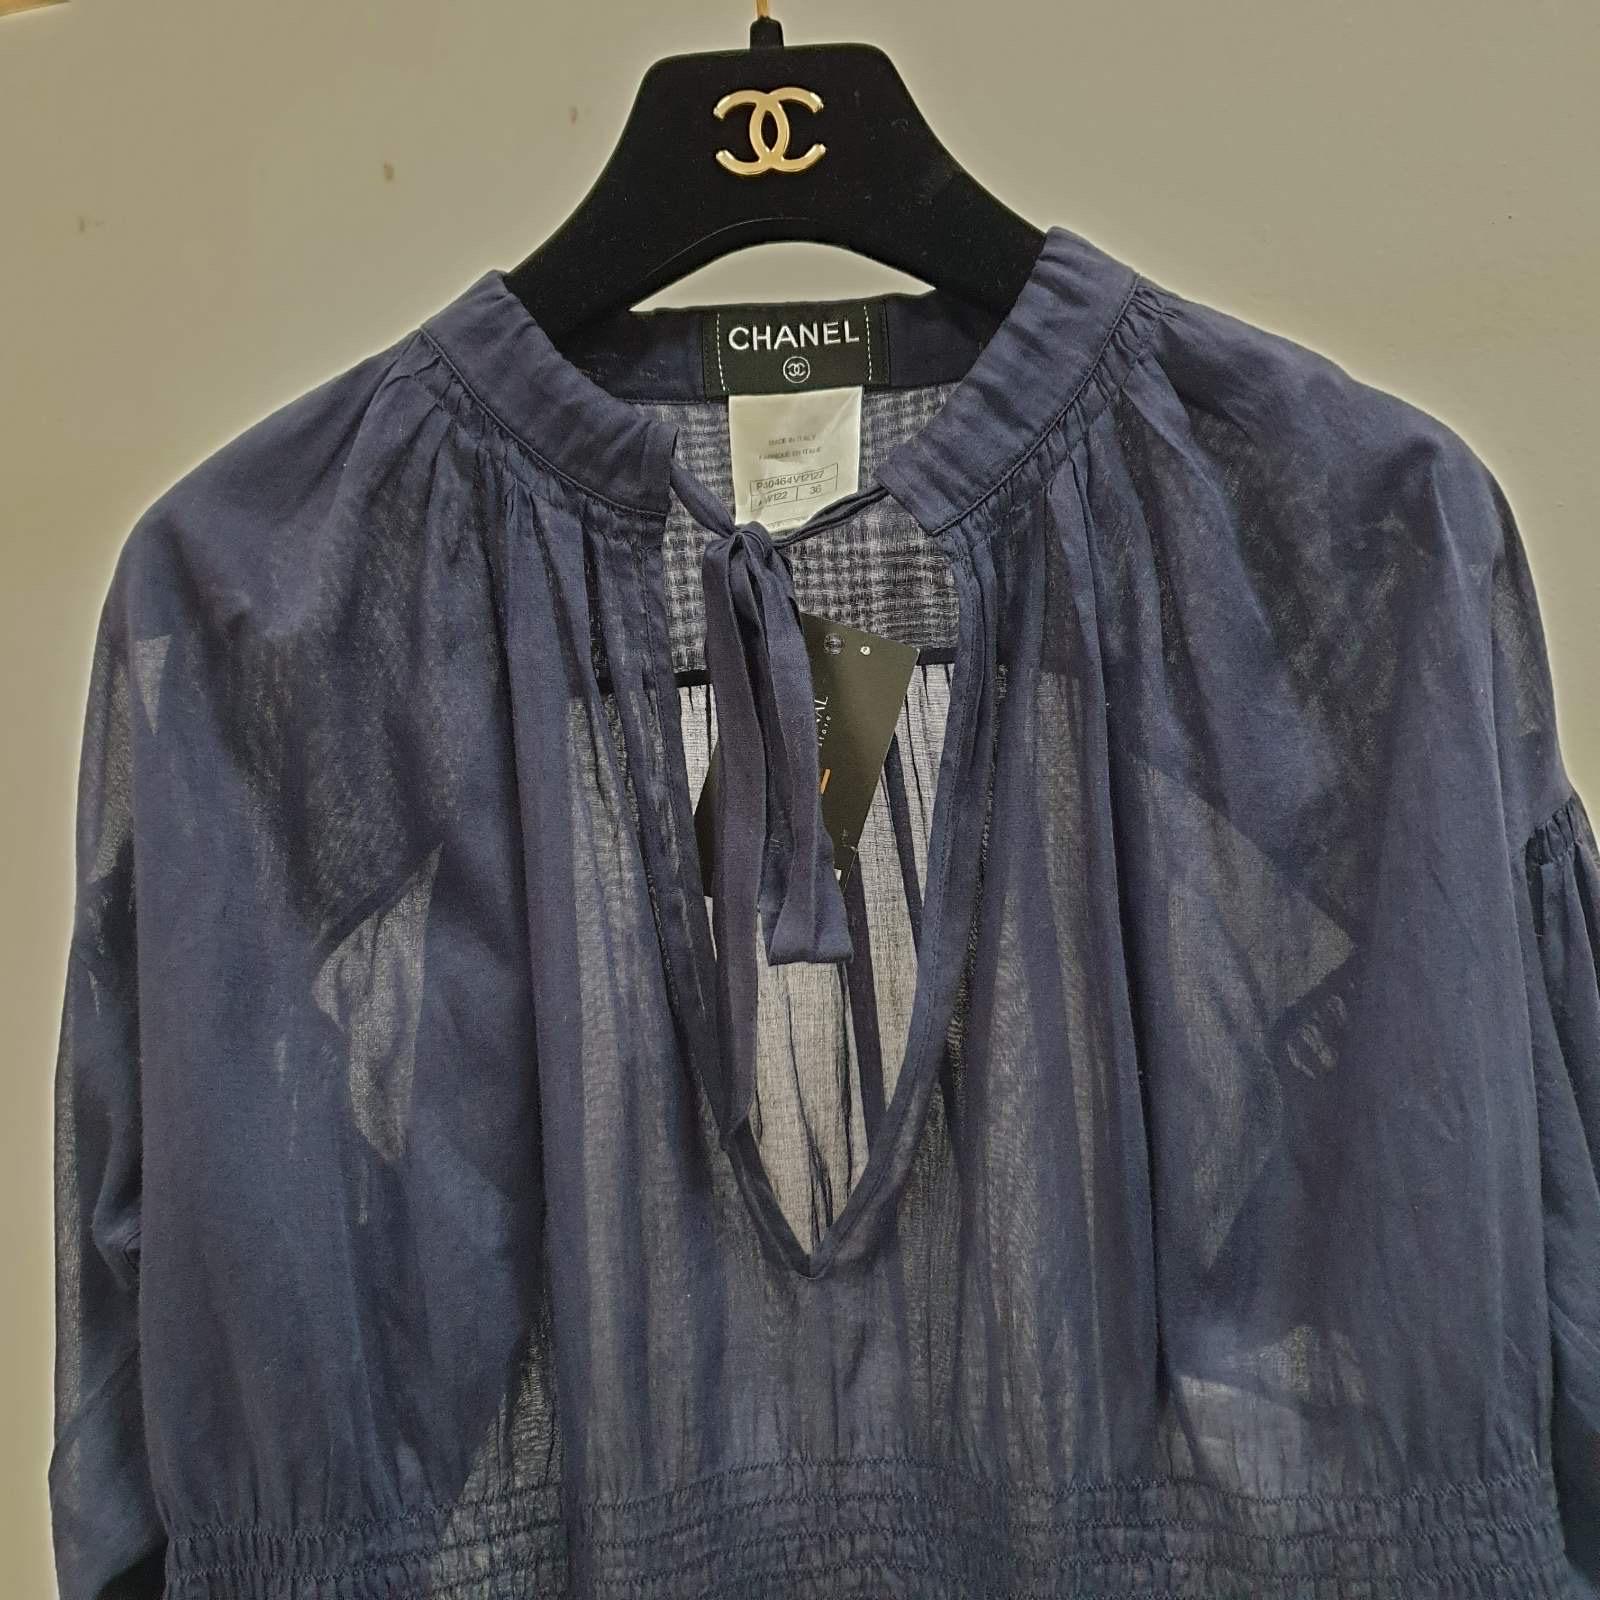 CHANEL Bluse mit gesmokter Taille, marineblau

Die Preise von Chanel sind seit ihrer Herstellung ein paar Mal gestiegen. Sie wären heute viel höher im Handel

Diese marineblaue Bluse von Chanel ist ein modisches und urbanes Kleidungsstück.

  Es ist